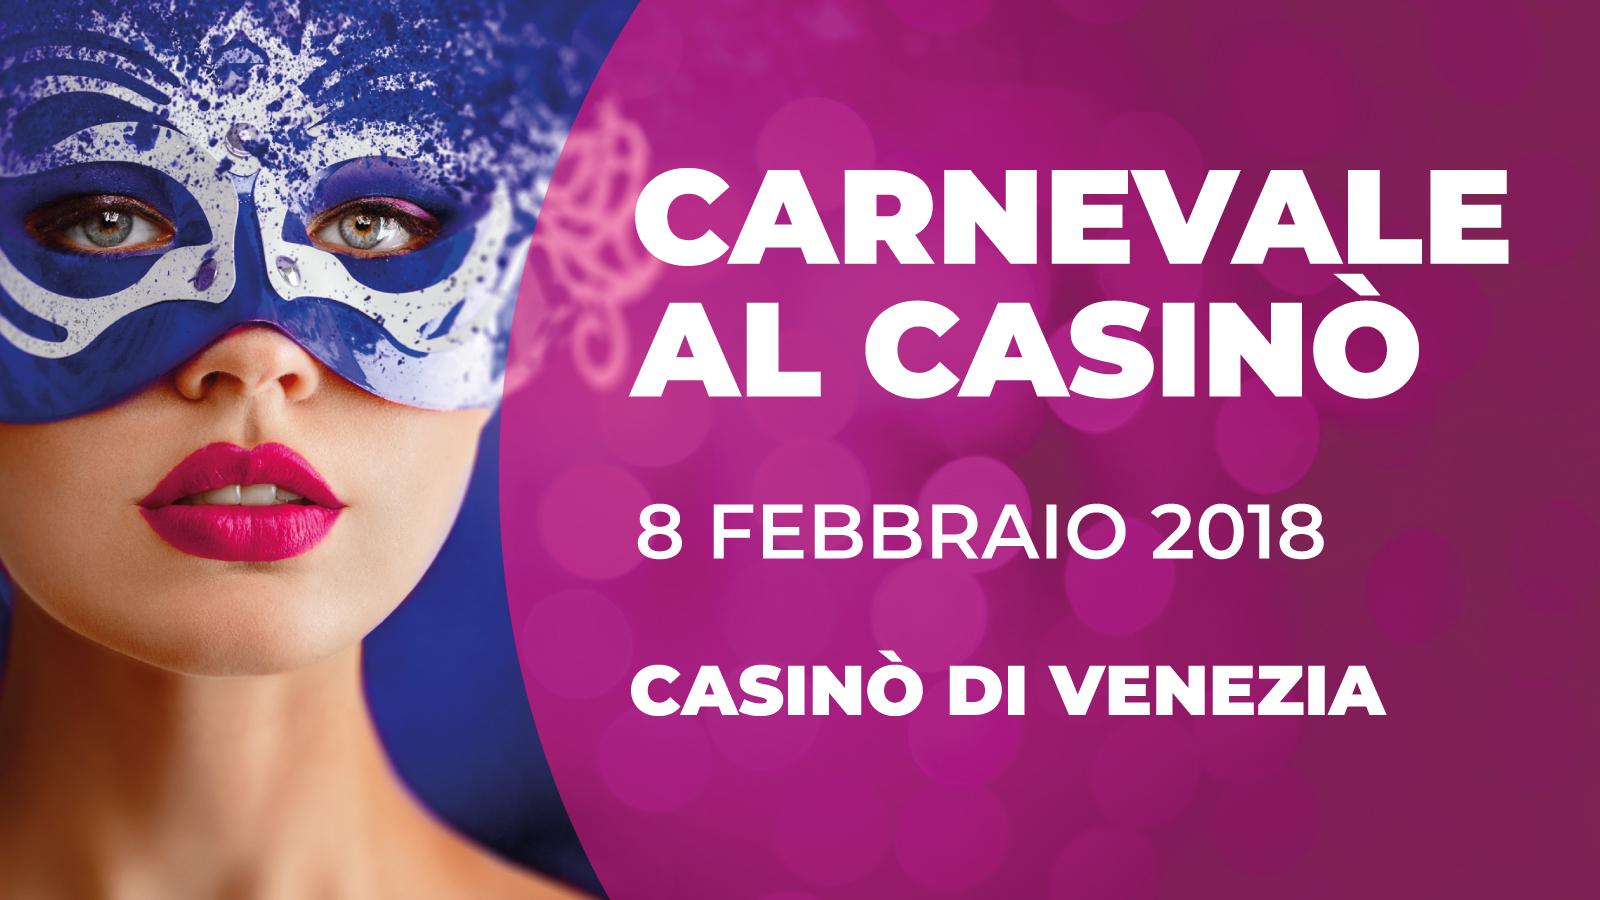 carnival venezia casino tour